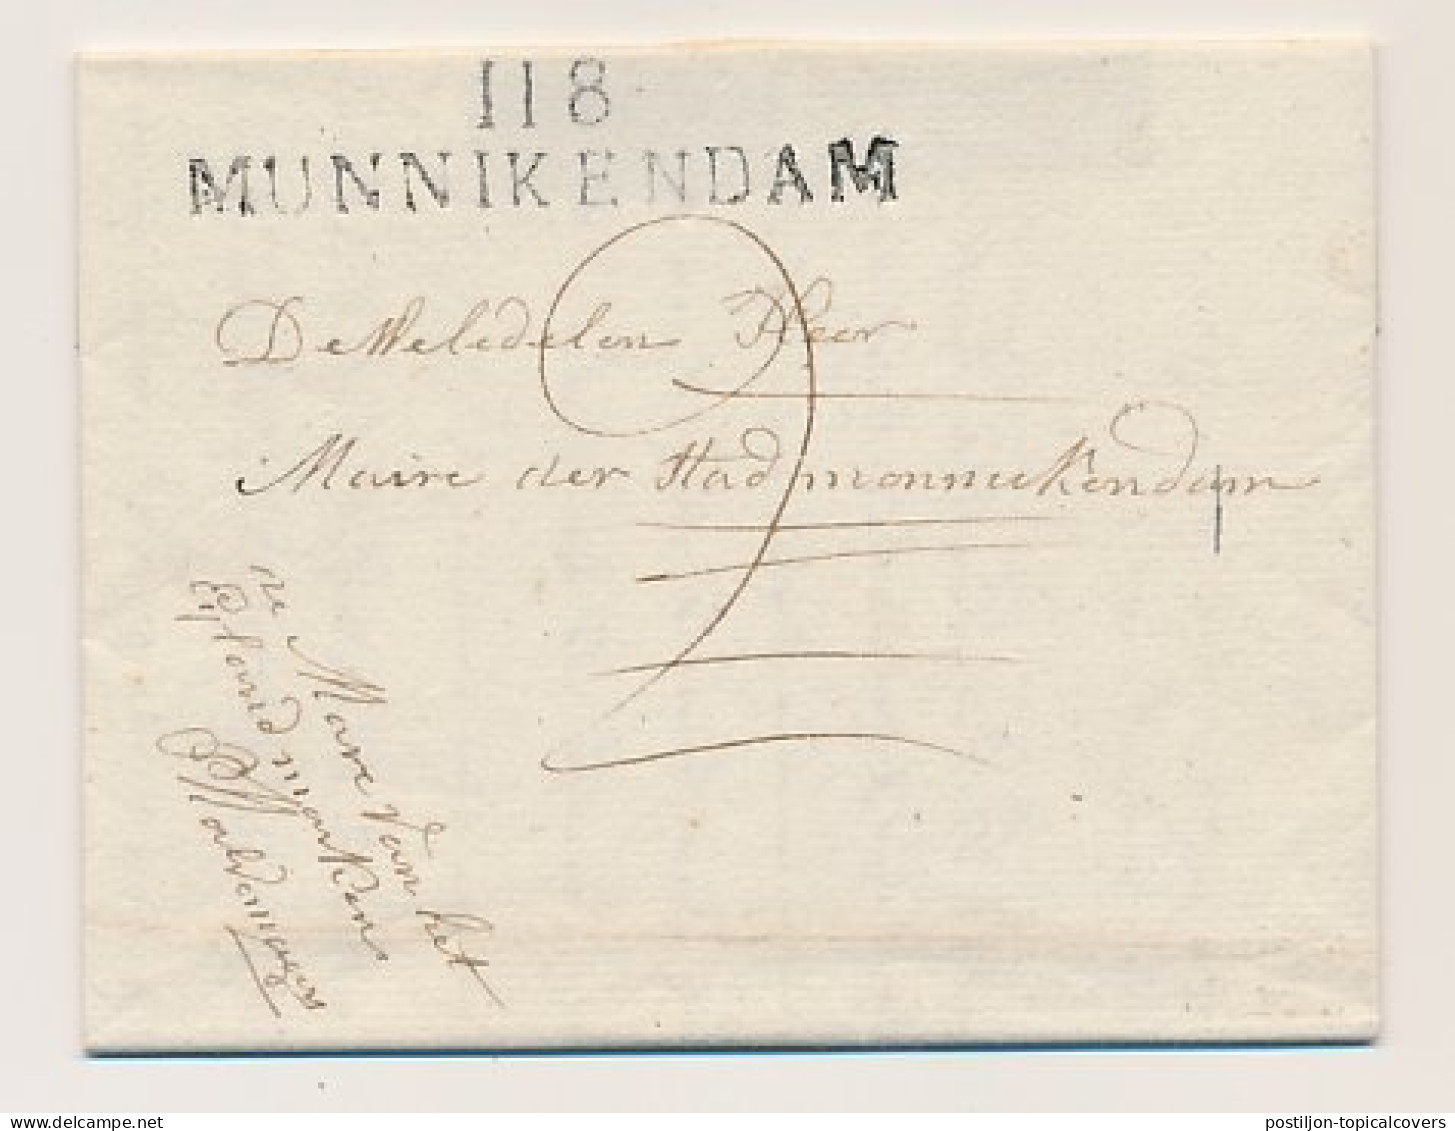 Marken - 118 MUNNIKENDAM 1811 - ...-1852 Préphilatélie